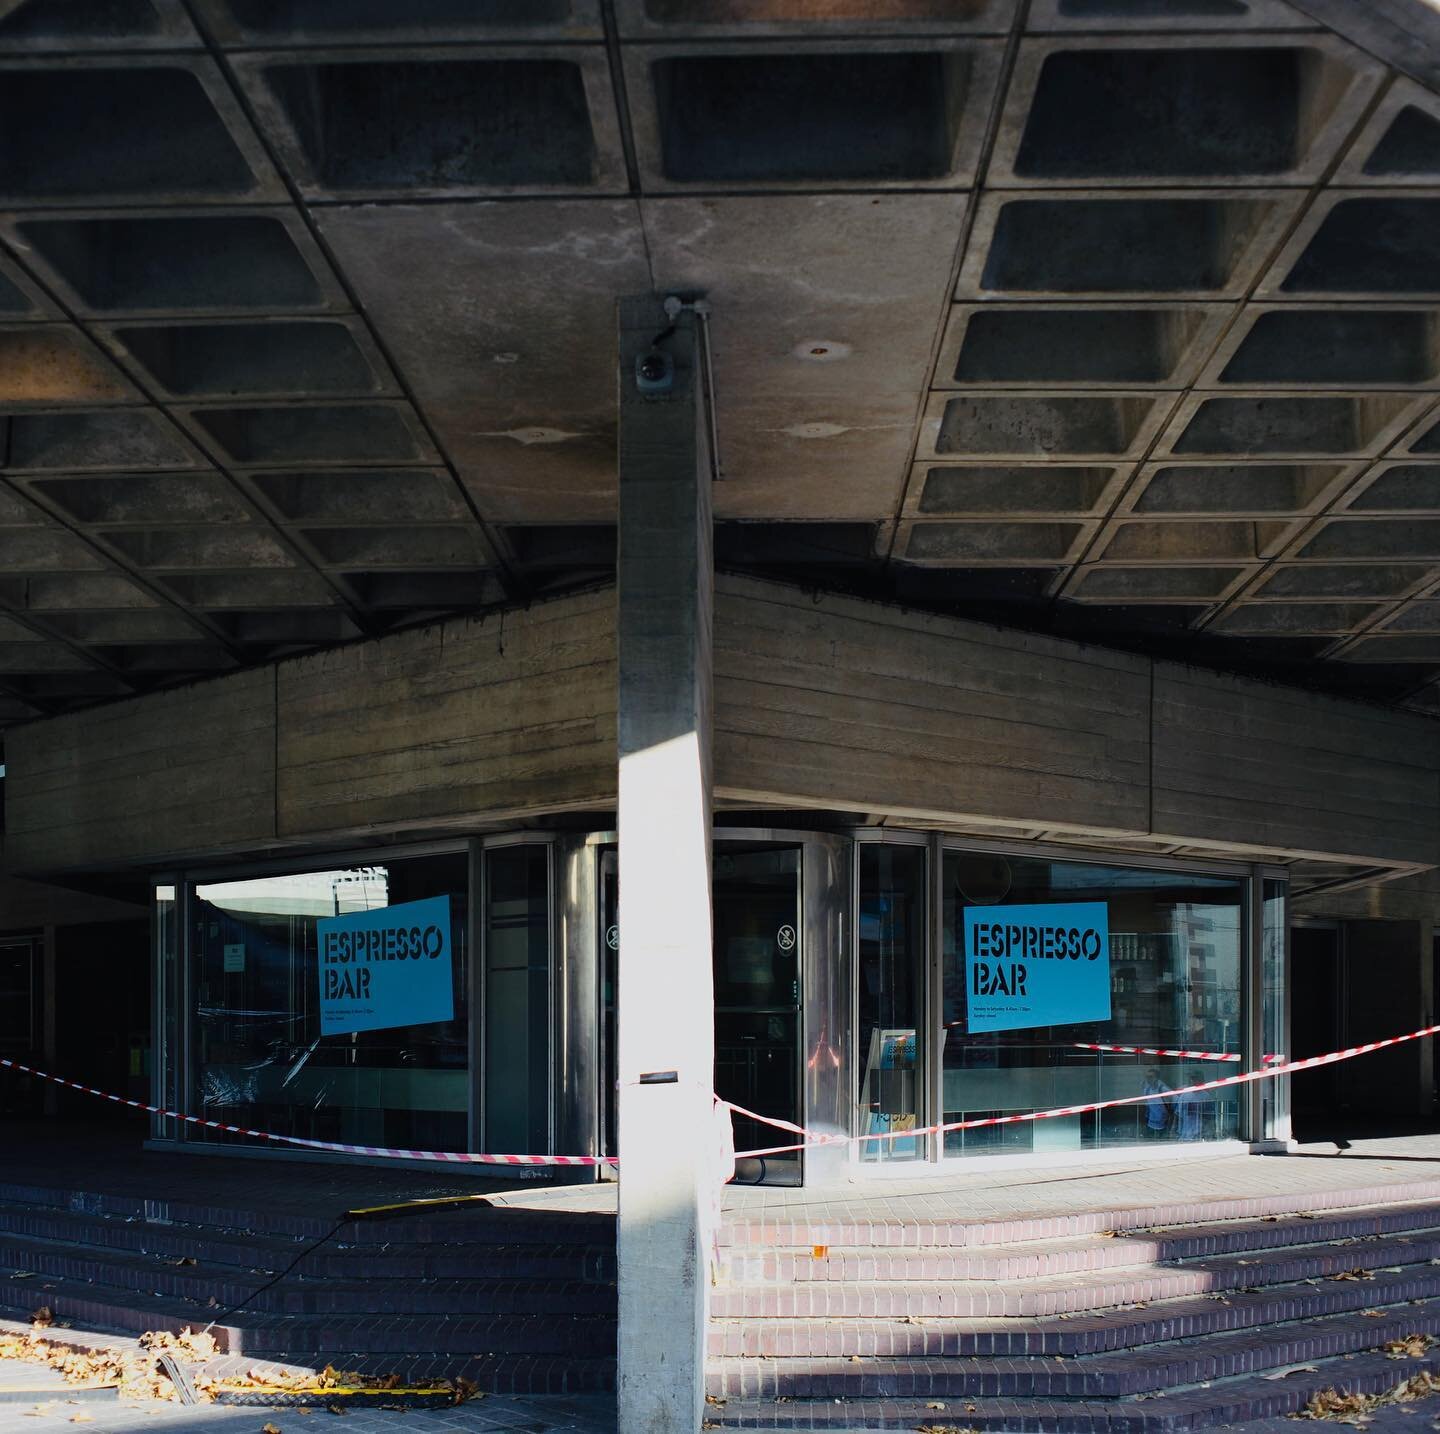 Brutalism out of bounds...
.
.
.
#brutalist #brutalistarchitecture #brutalist_architecture #brutalistlondon